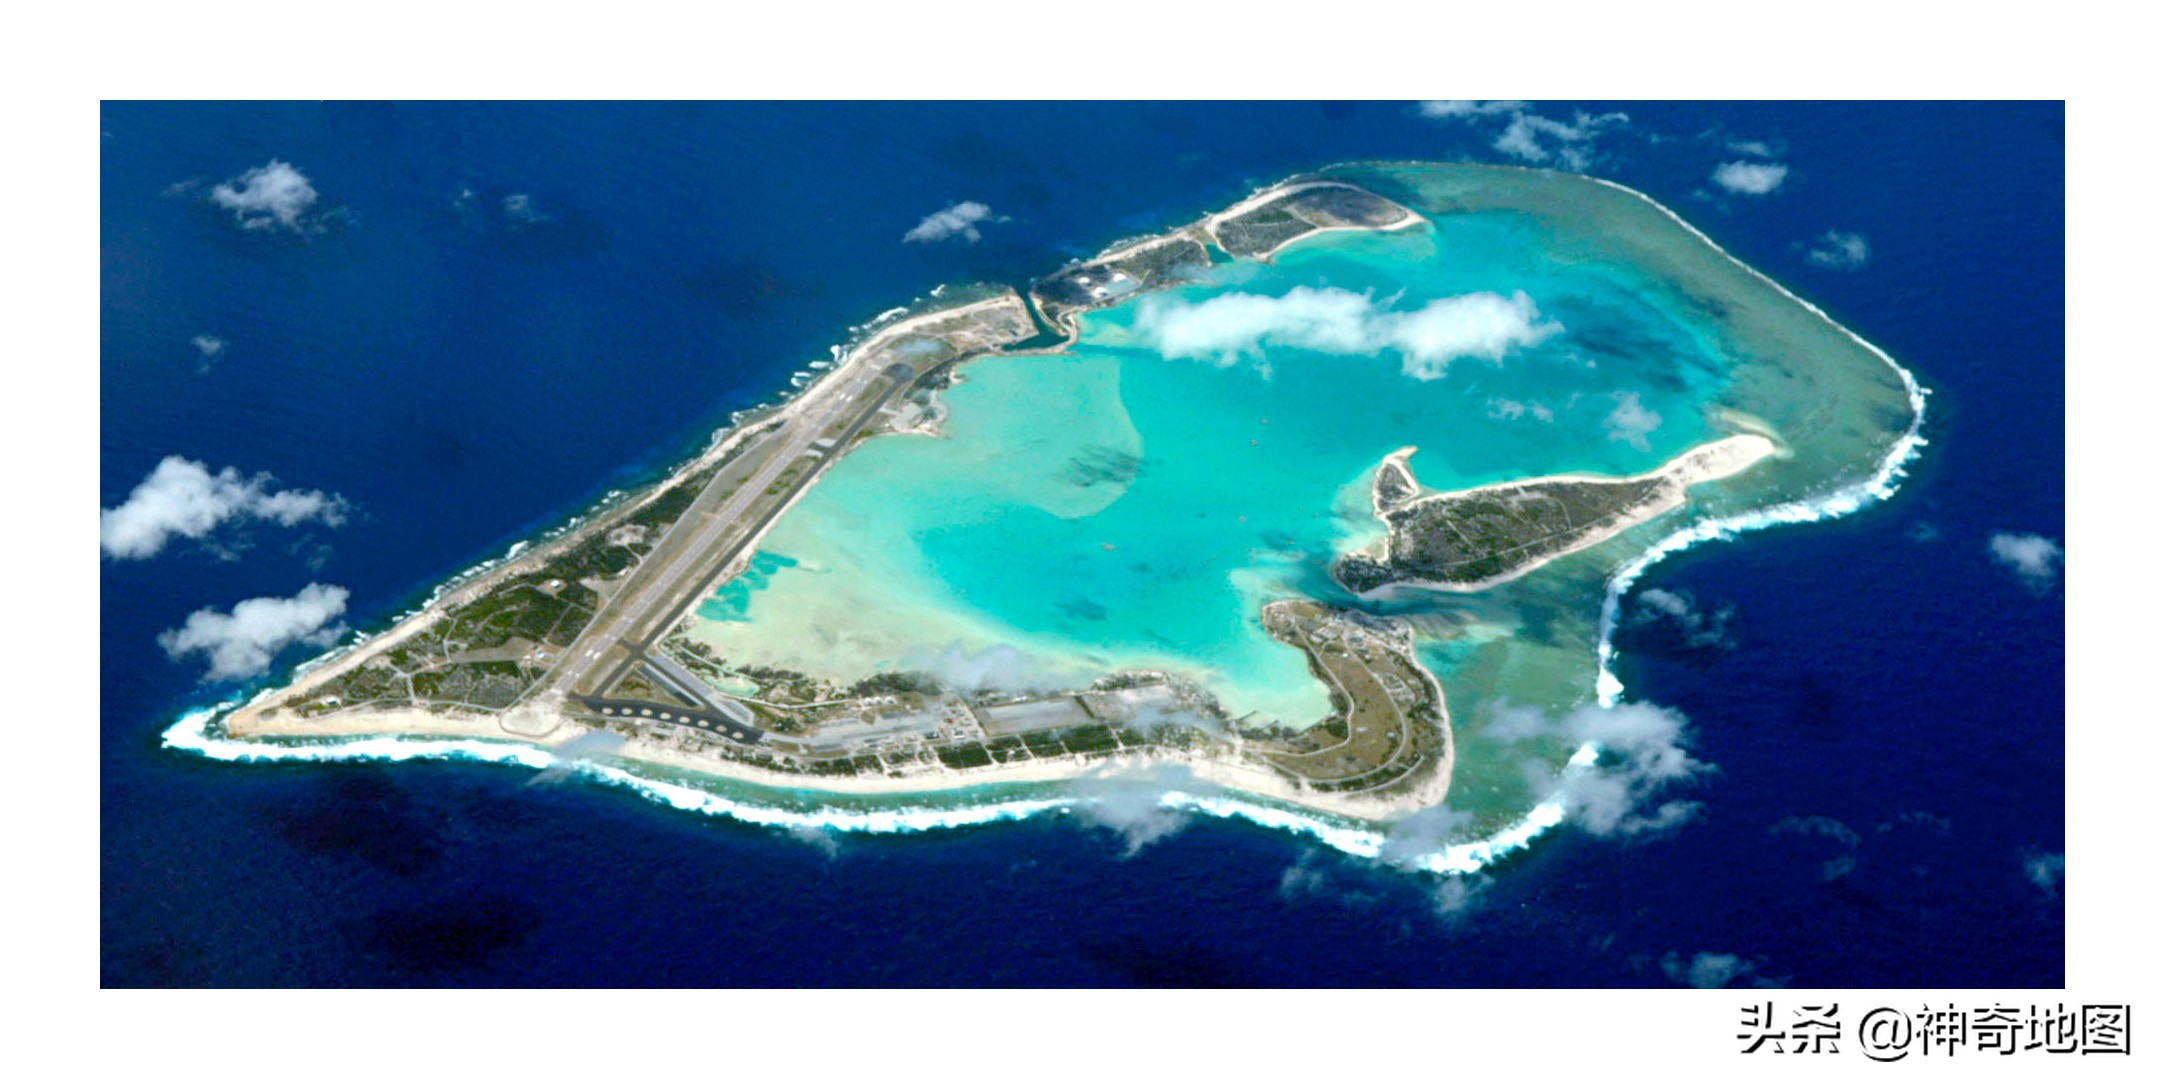 乱谈岛屿（45）威克岛（Wake Island）让总统丢面儿的将军